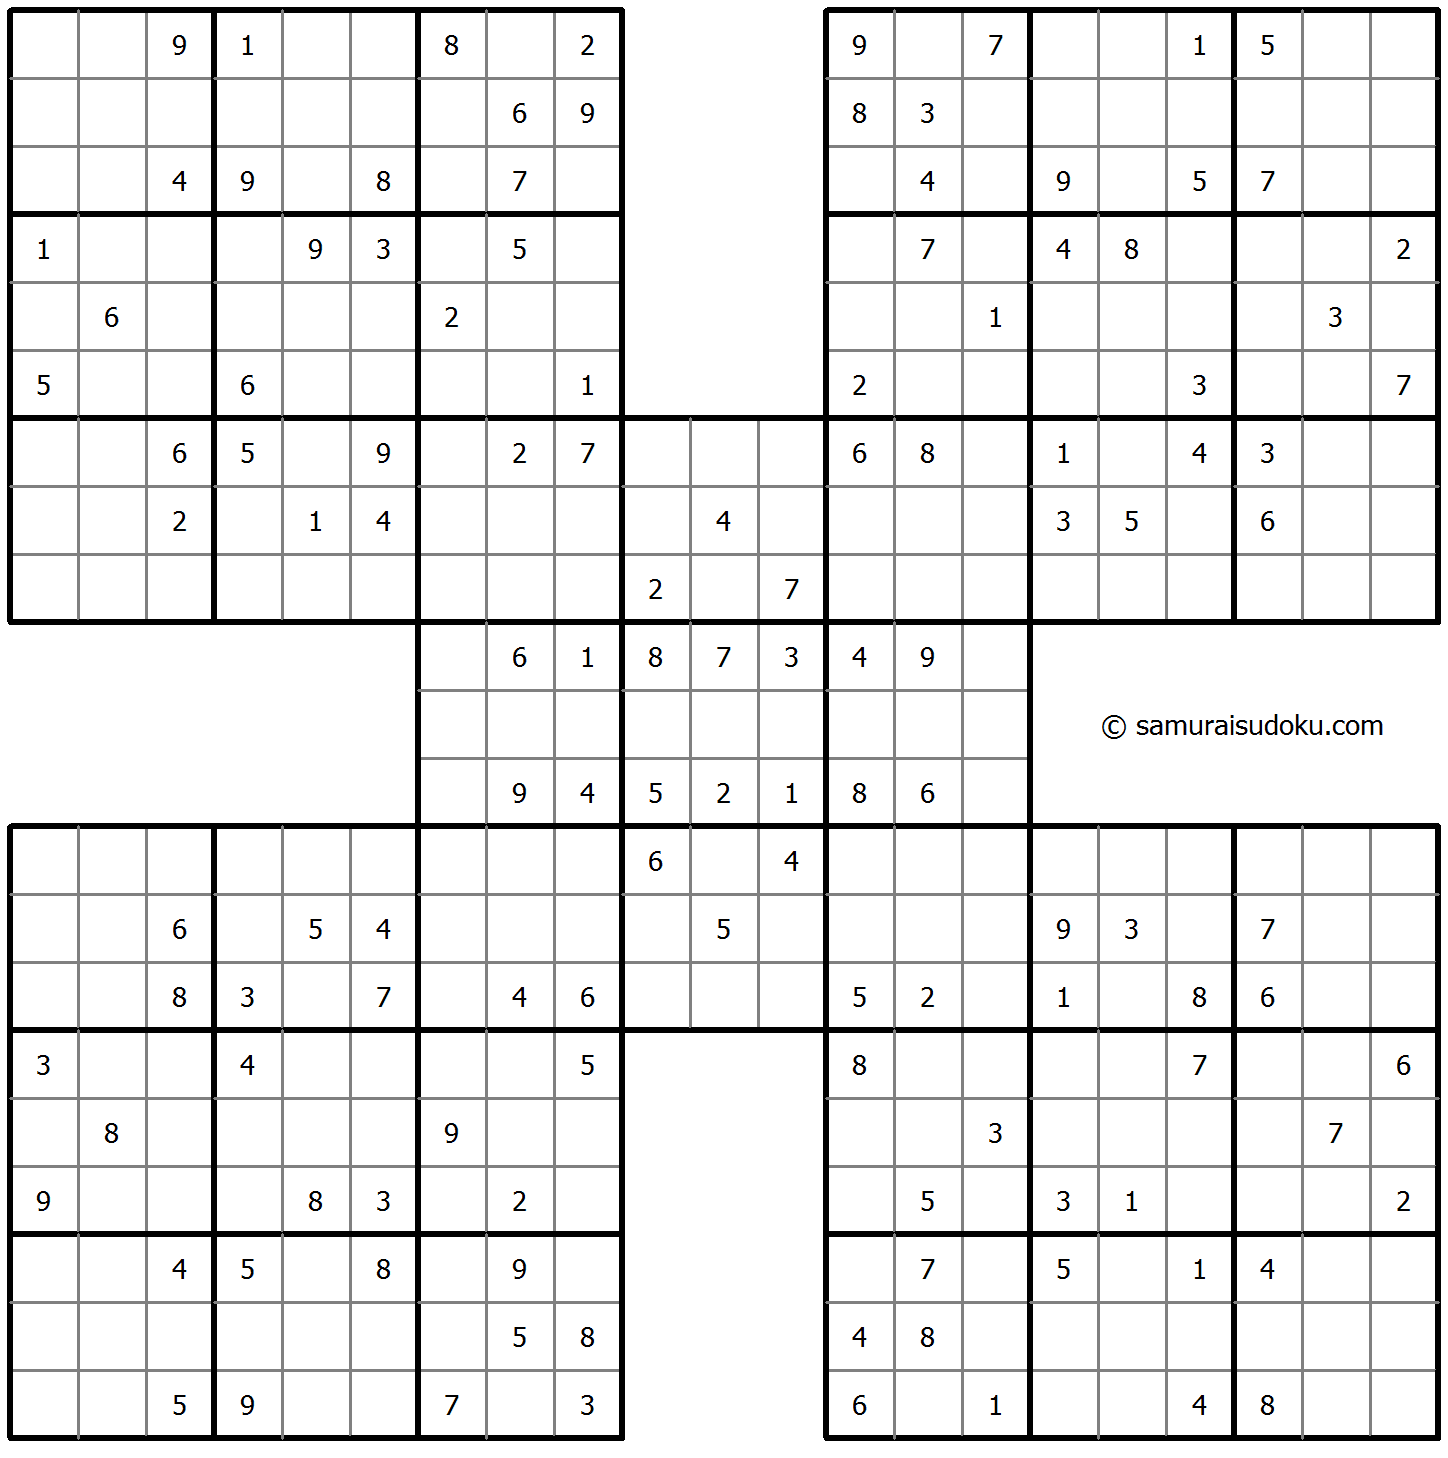 Samurai Sudoku 27-April-2022